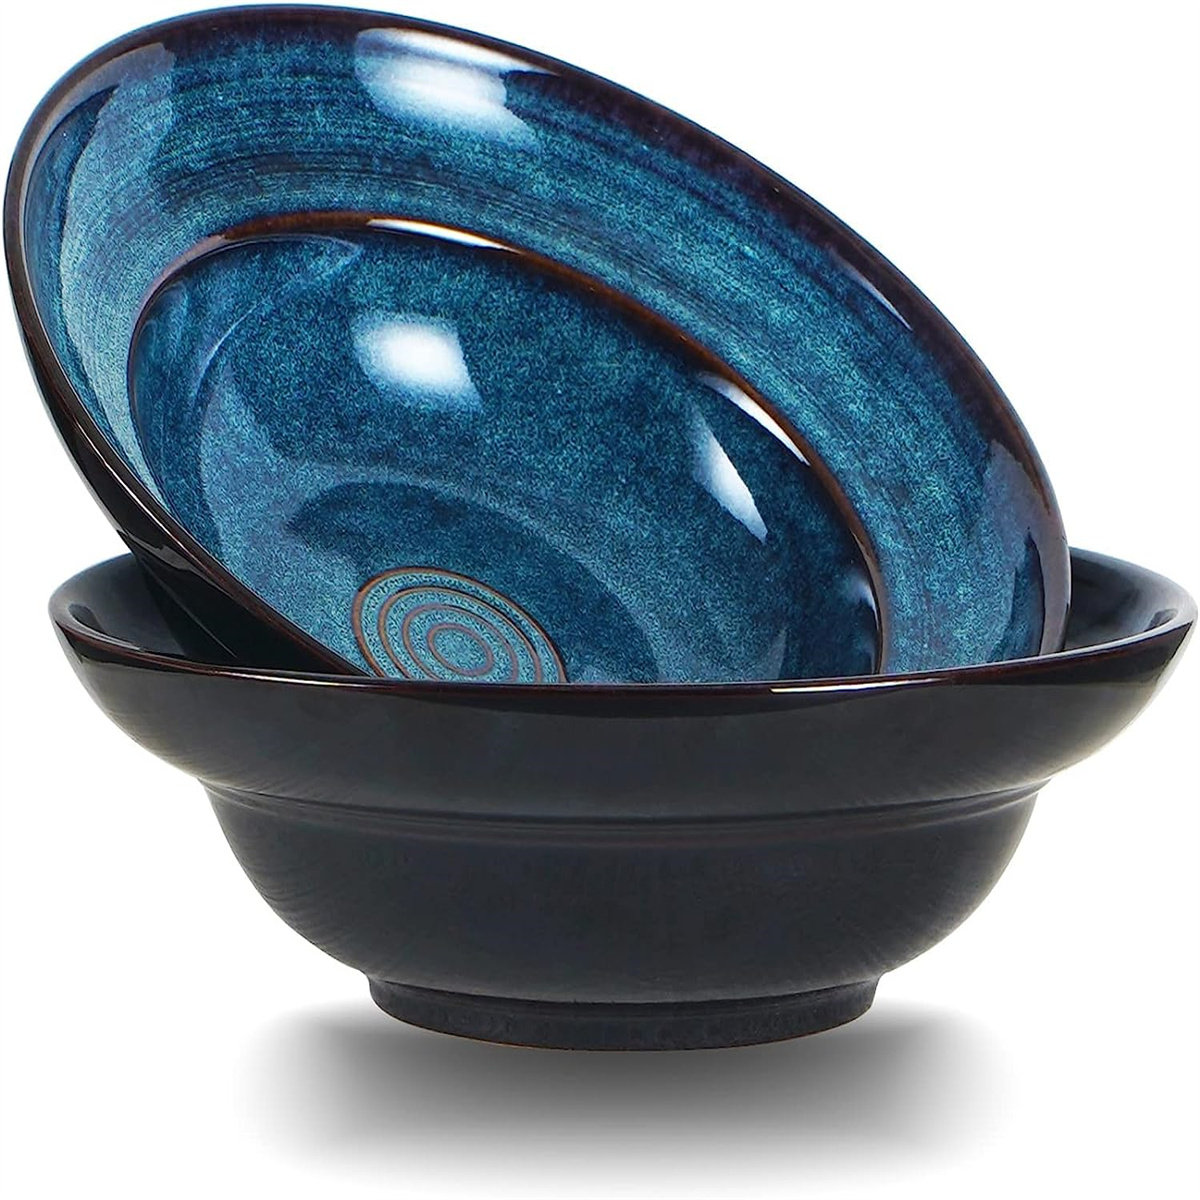 https://assets.wfcdn.com/im/90855897/compr-r85/2487/248793884/ceramic-pasta-salad-bowl-10-wide-rim-soup-bowls-48oz-deep-porcelain-pasta-plate-set-of-2large-serving-bowls-for-kitchen.jpg